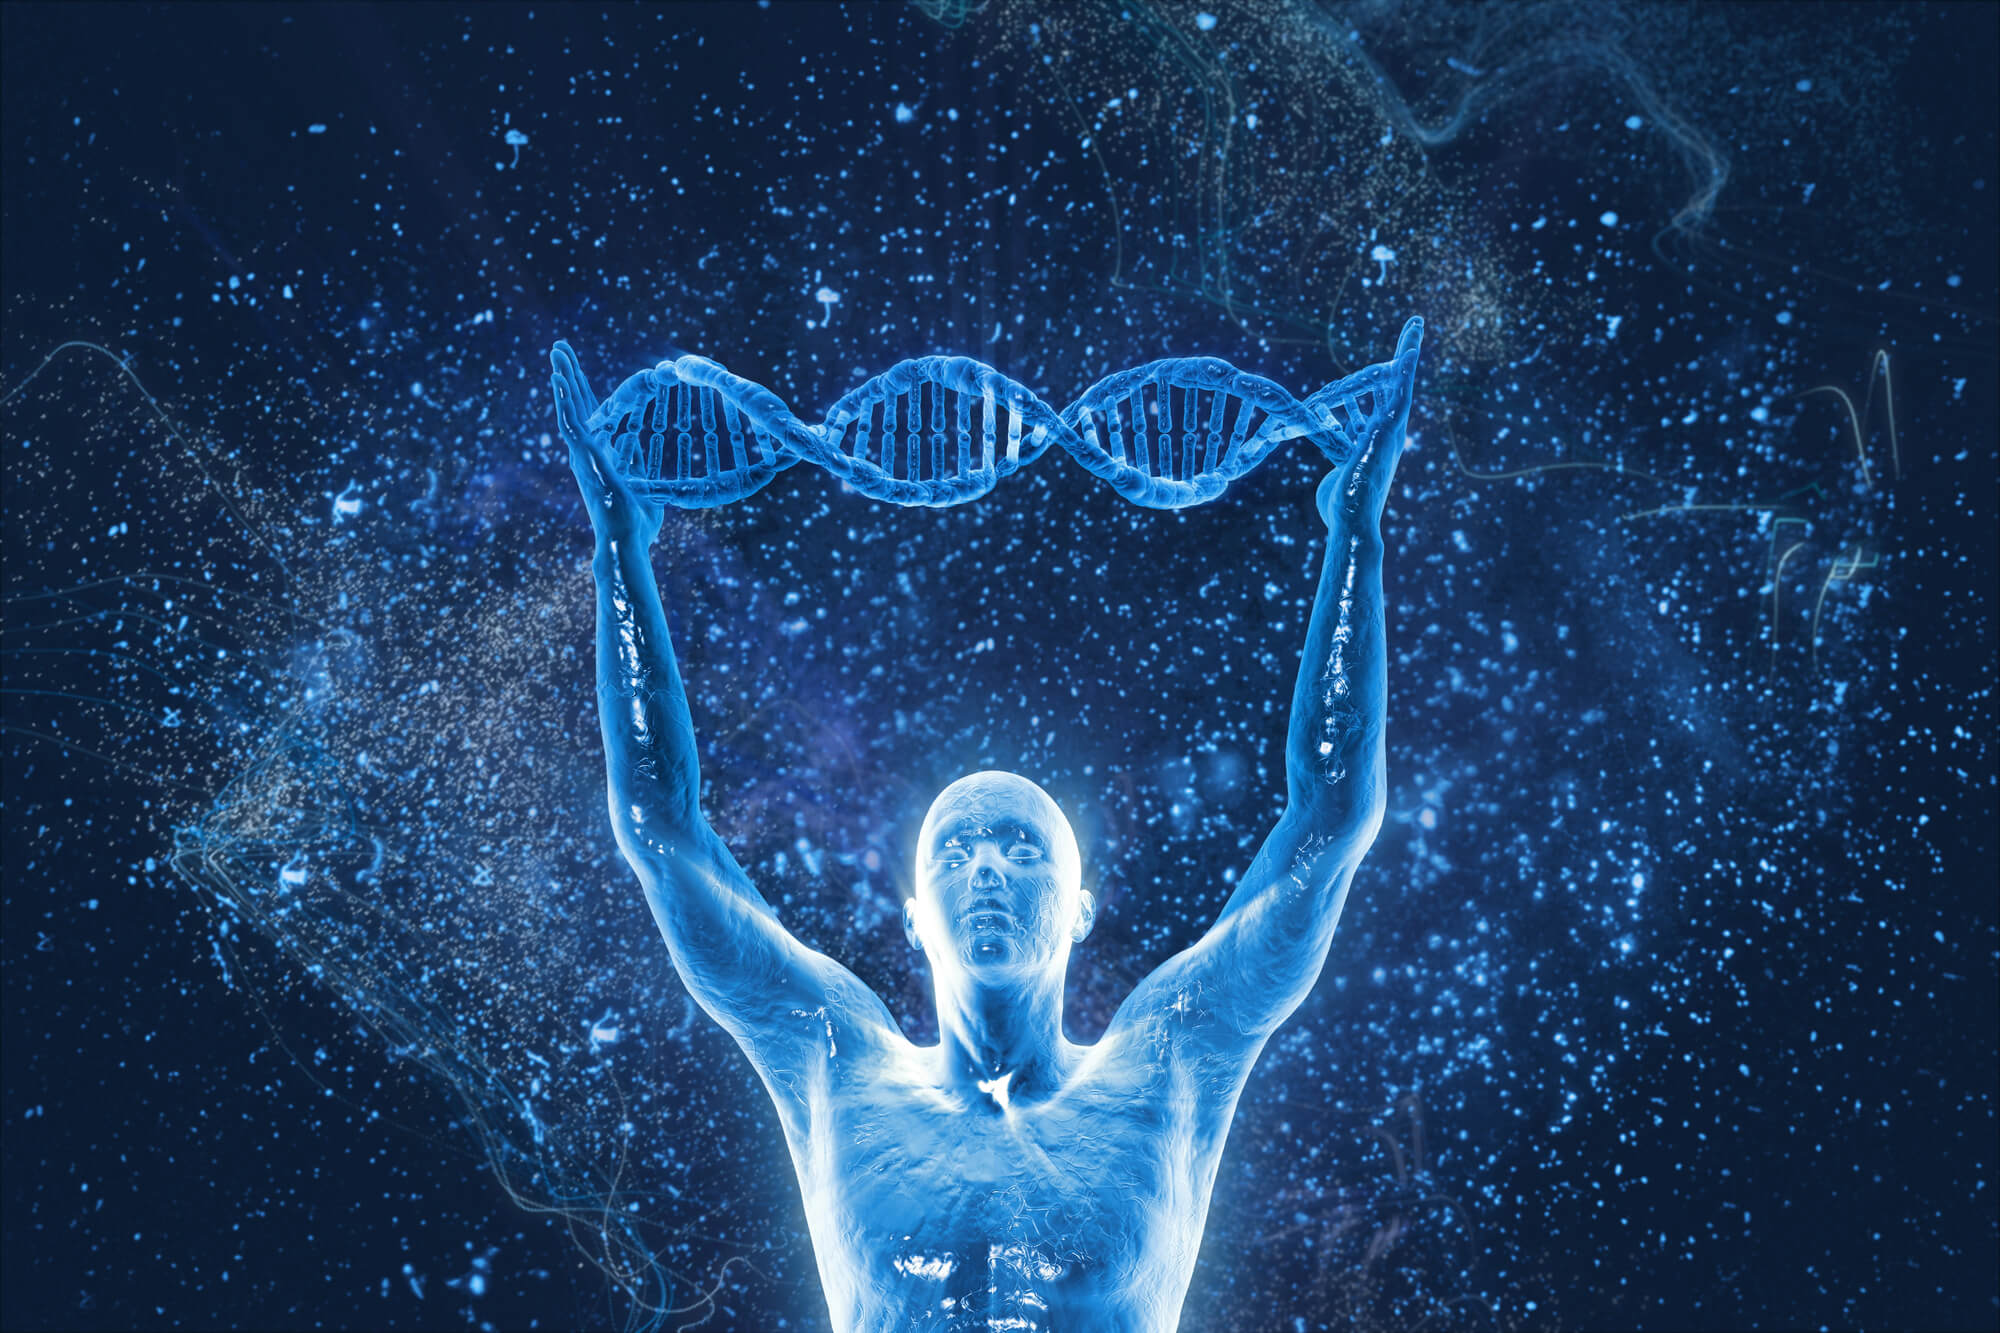 NOWE ODKRYCIA W NASZYM DNA – ROSJANIE WYJAŚNIAJĄ WIELE „PARANORMALNYCH” ZJAWISK